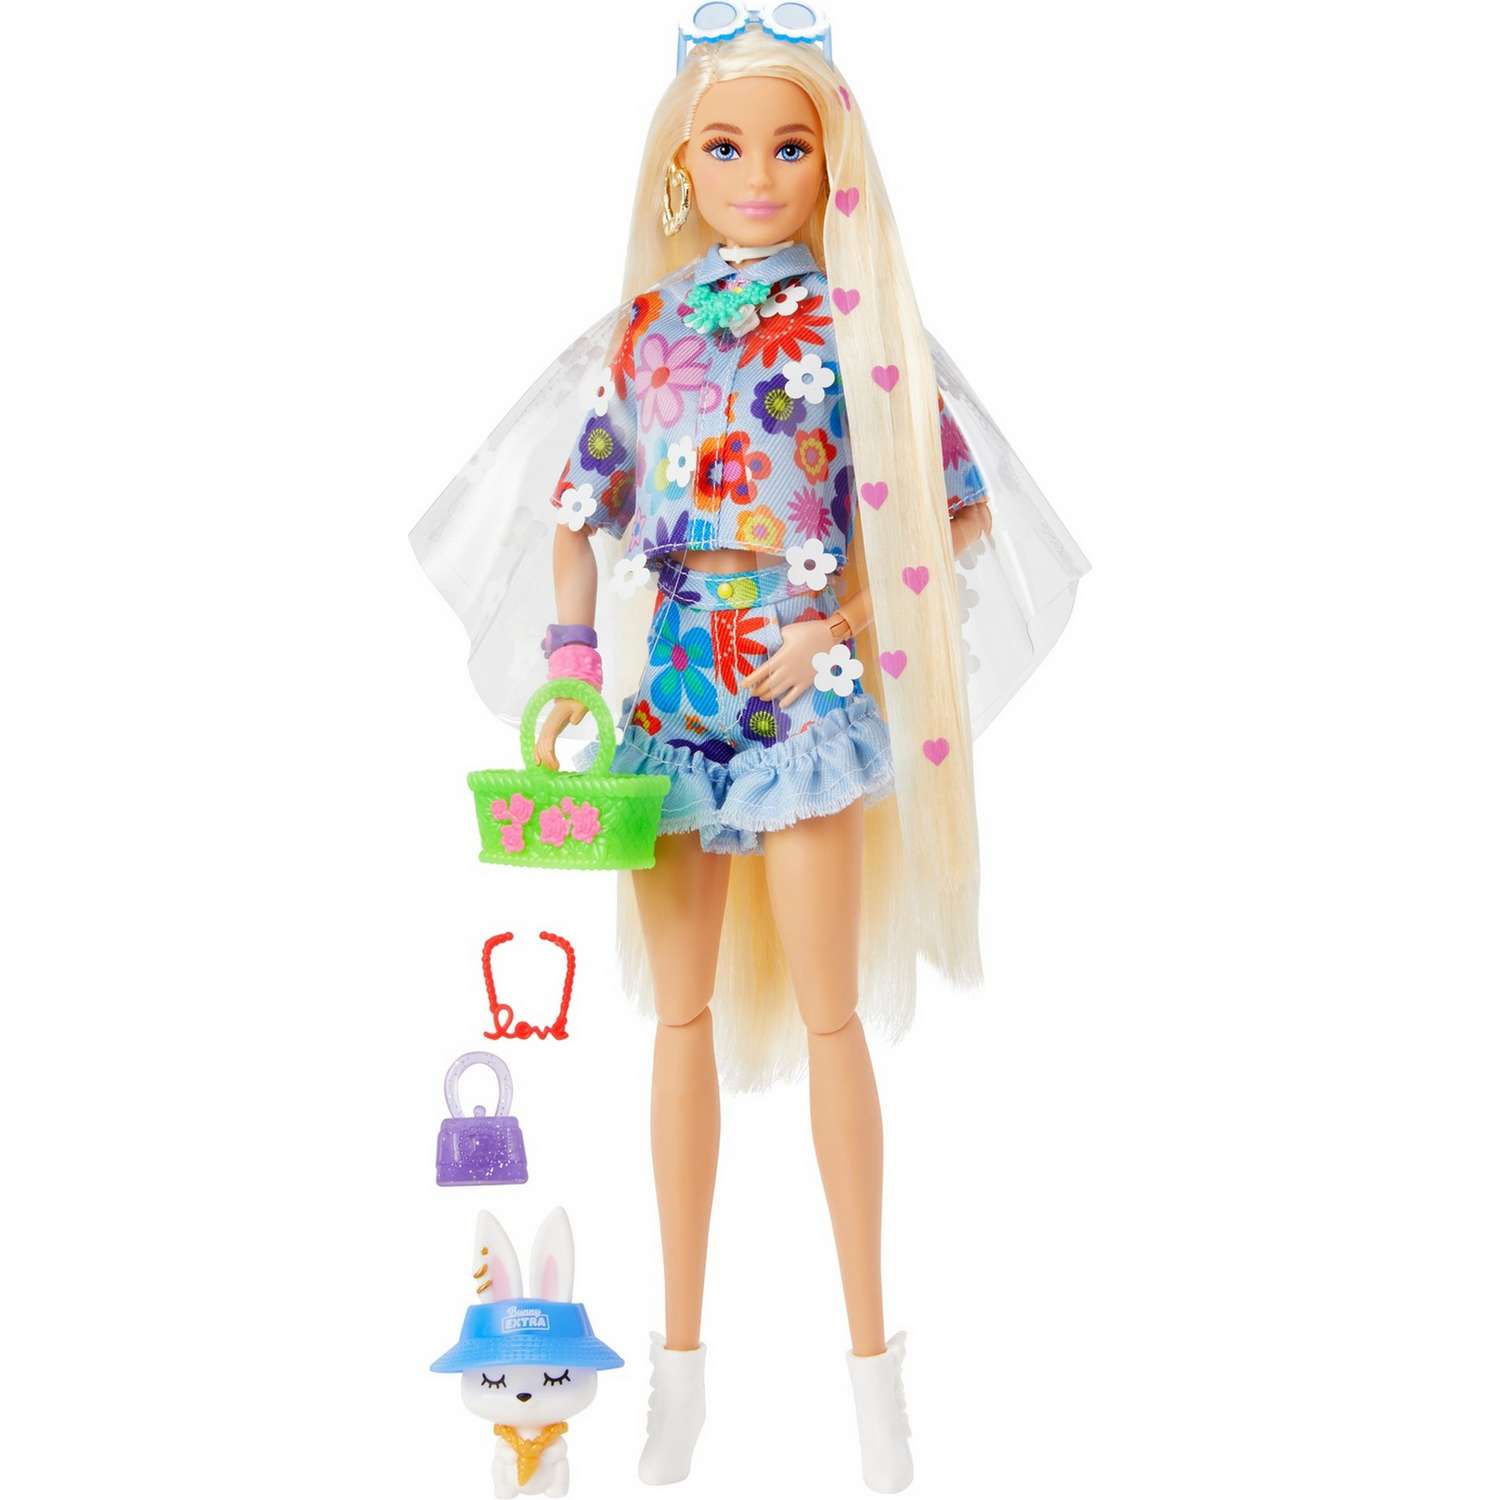 Кукла Barbie Экстра в одежде с цветочным принтом HDJ45 HDJ45 - фото 1